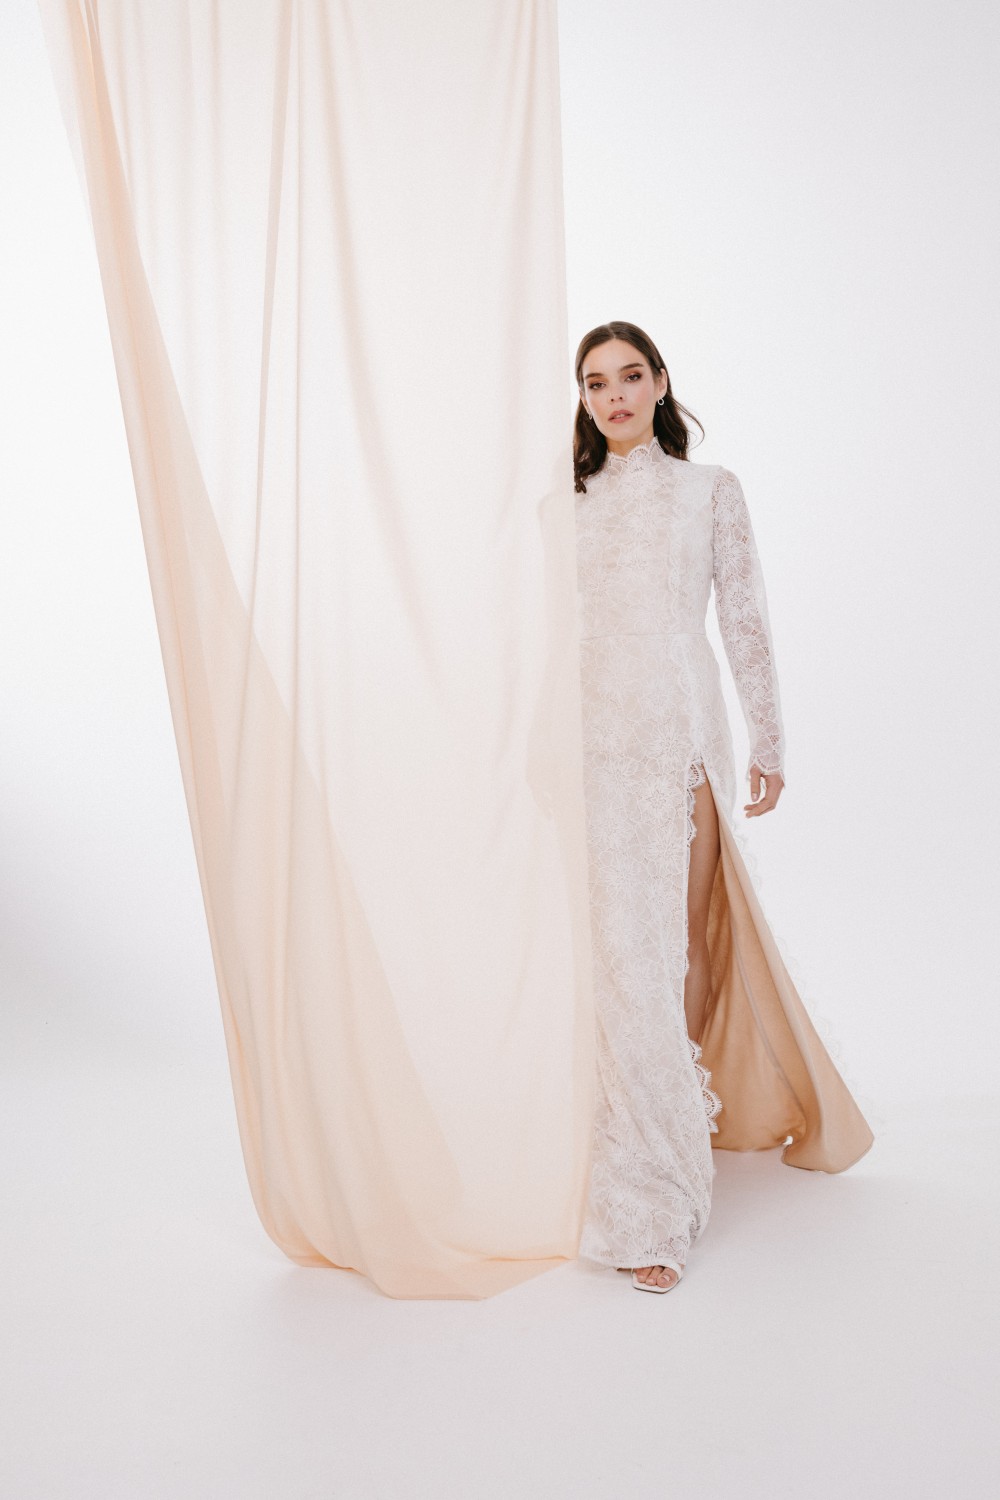 Moderni romantiška vestuvinė suknelė aukštu kaklu ir atvira nugara - 2024 kolekcija